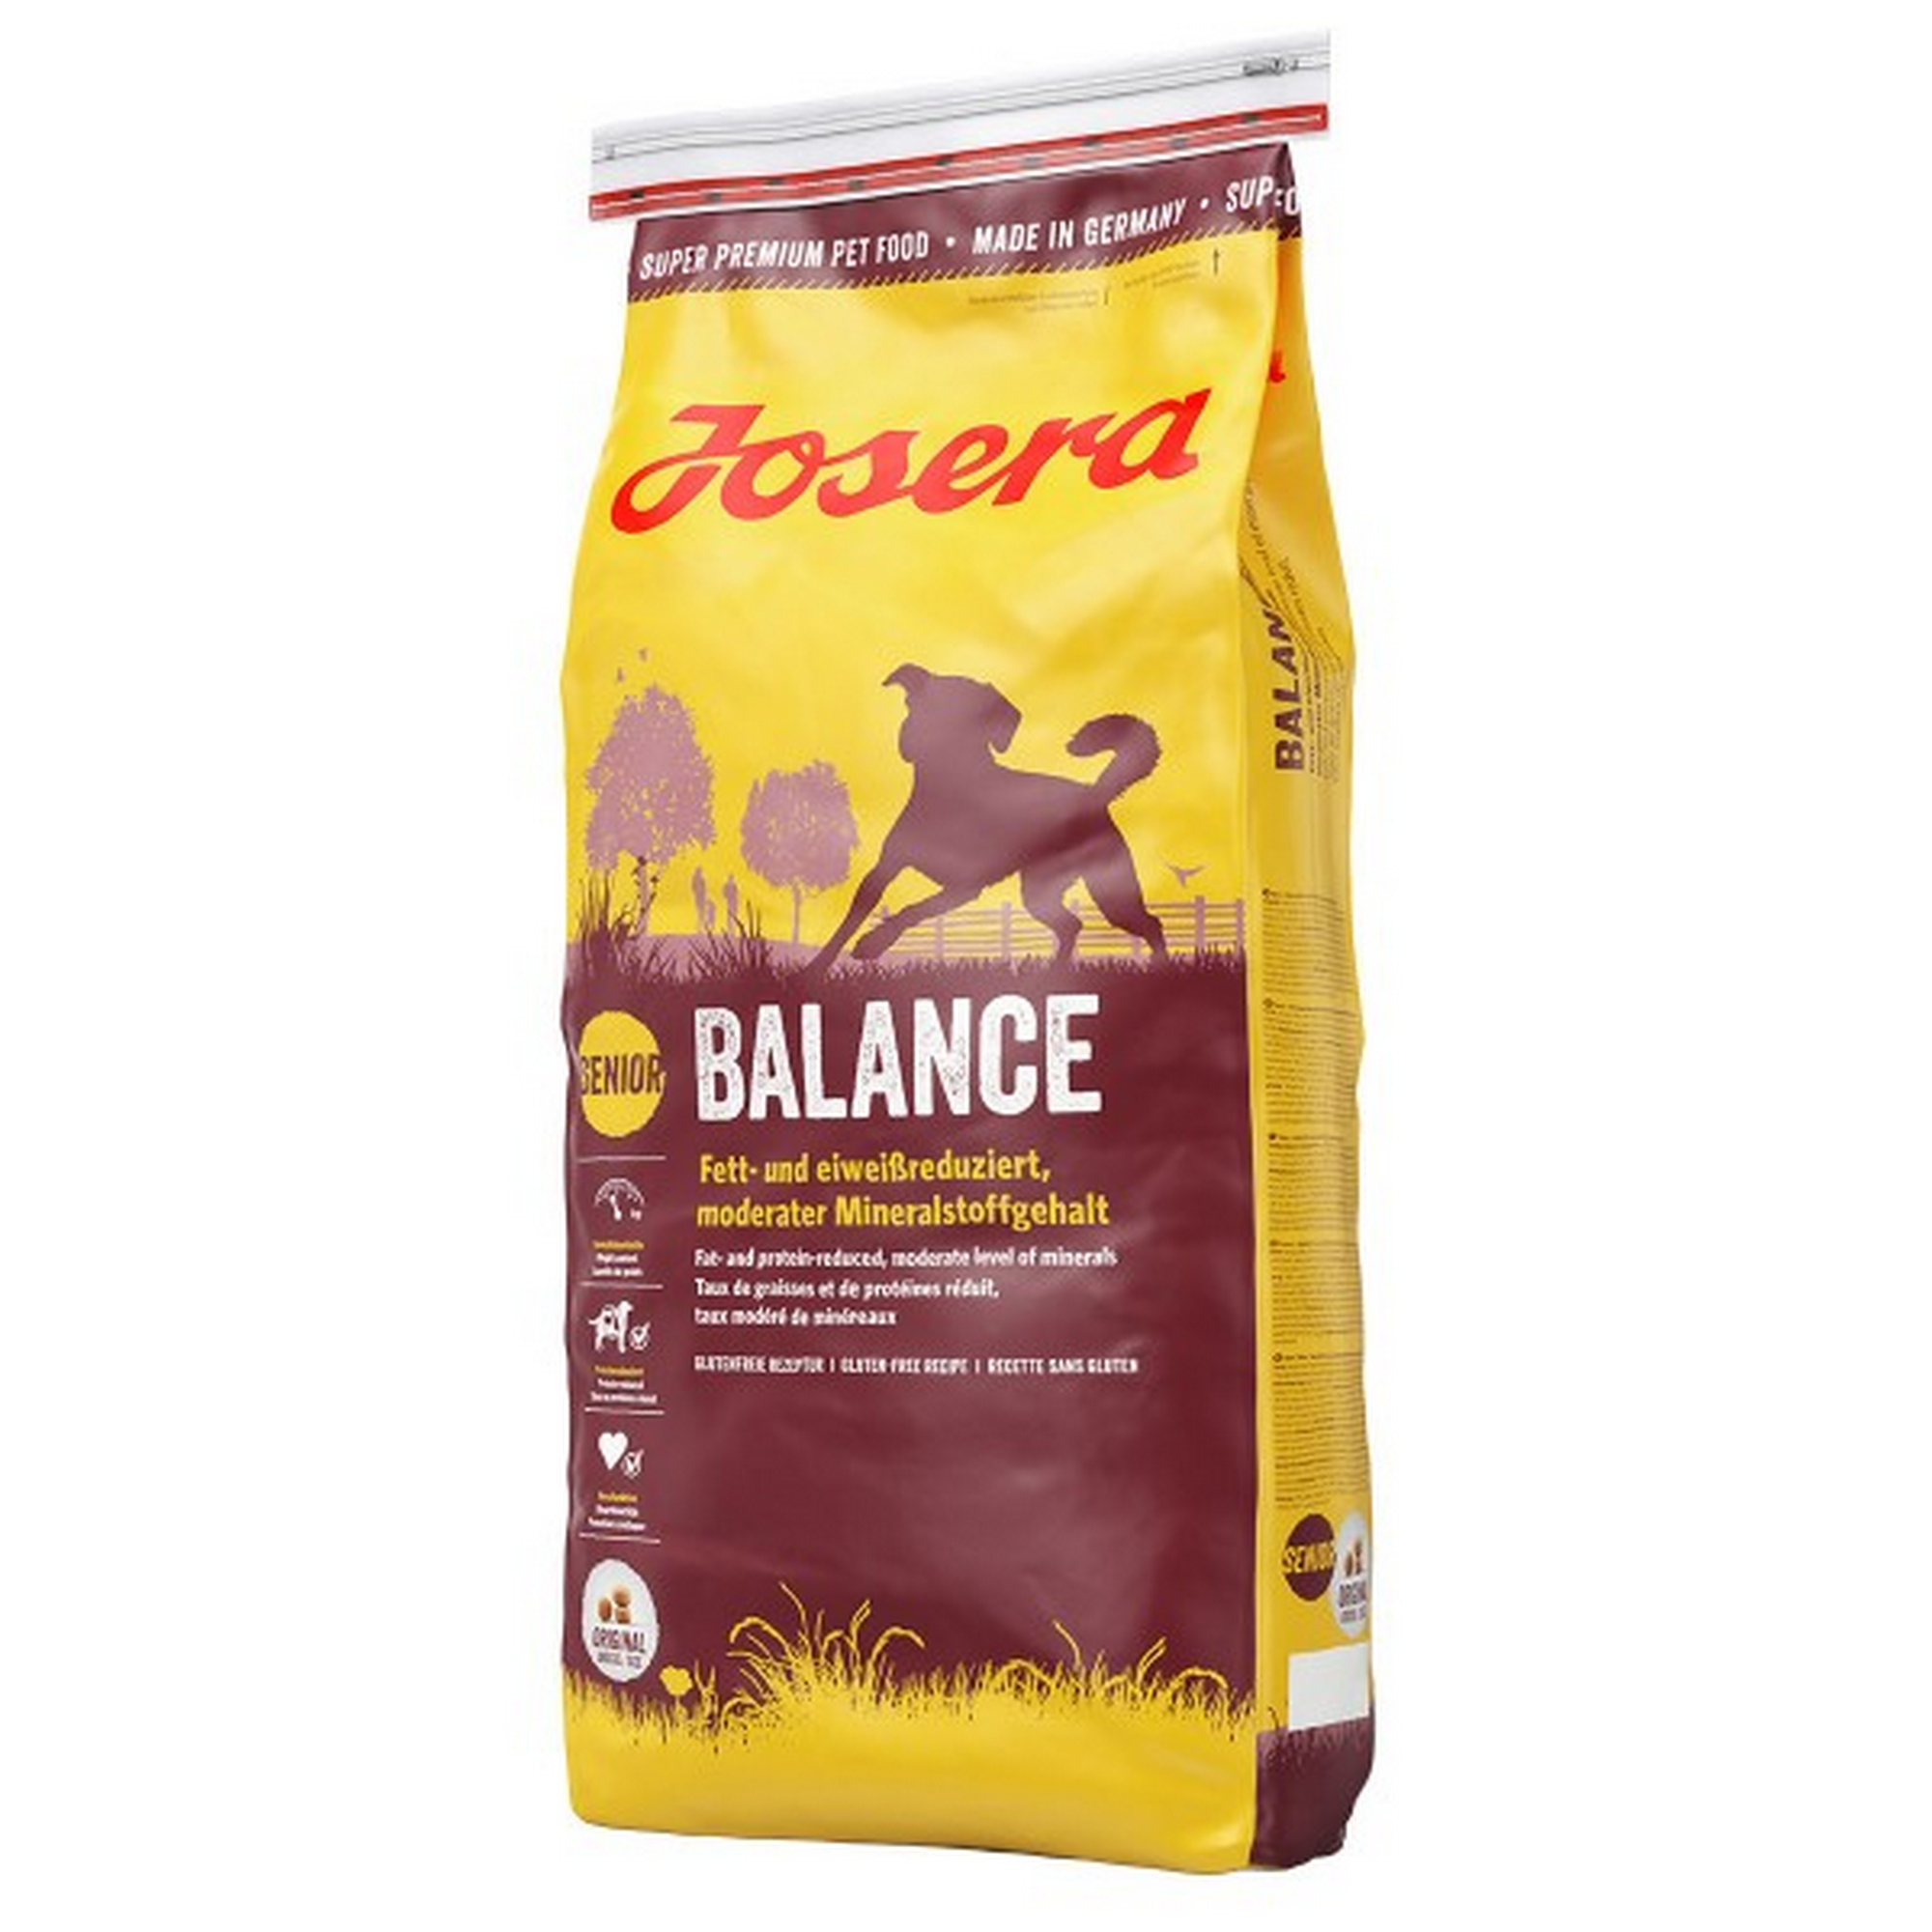 Hundetrockenfutter 'Balance' 15 kg + product picture